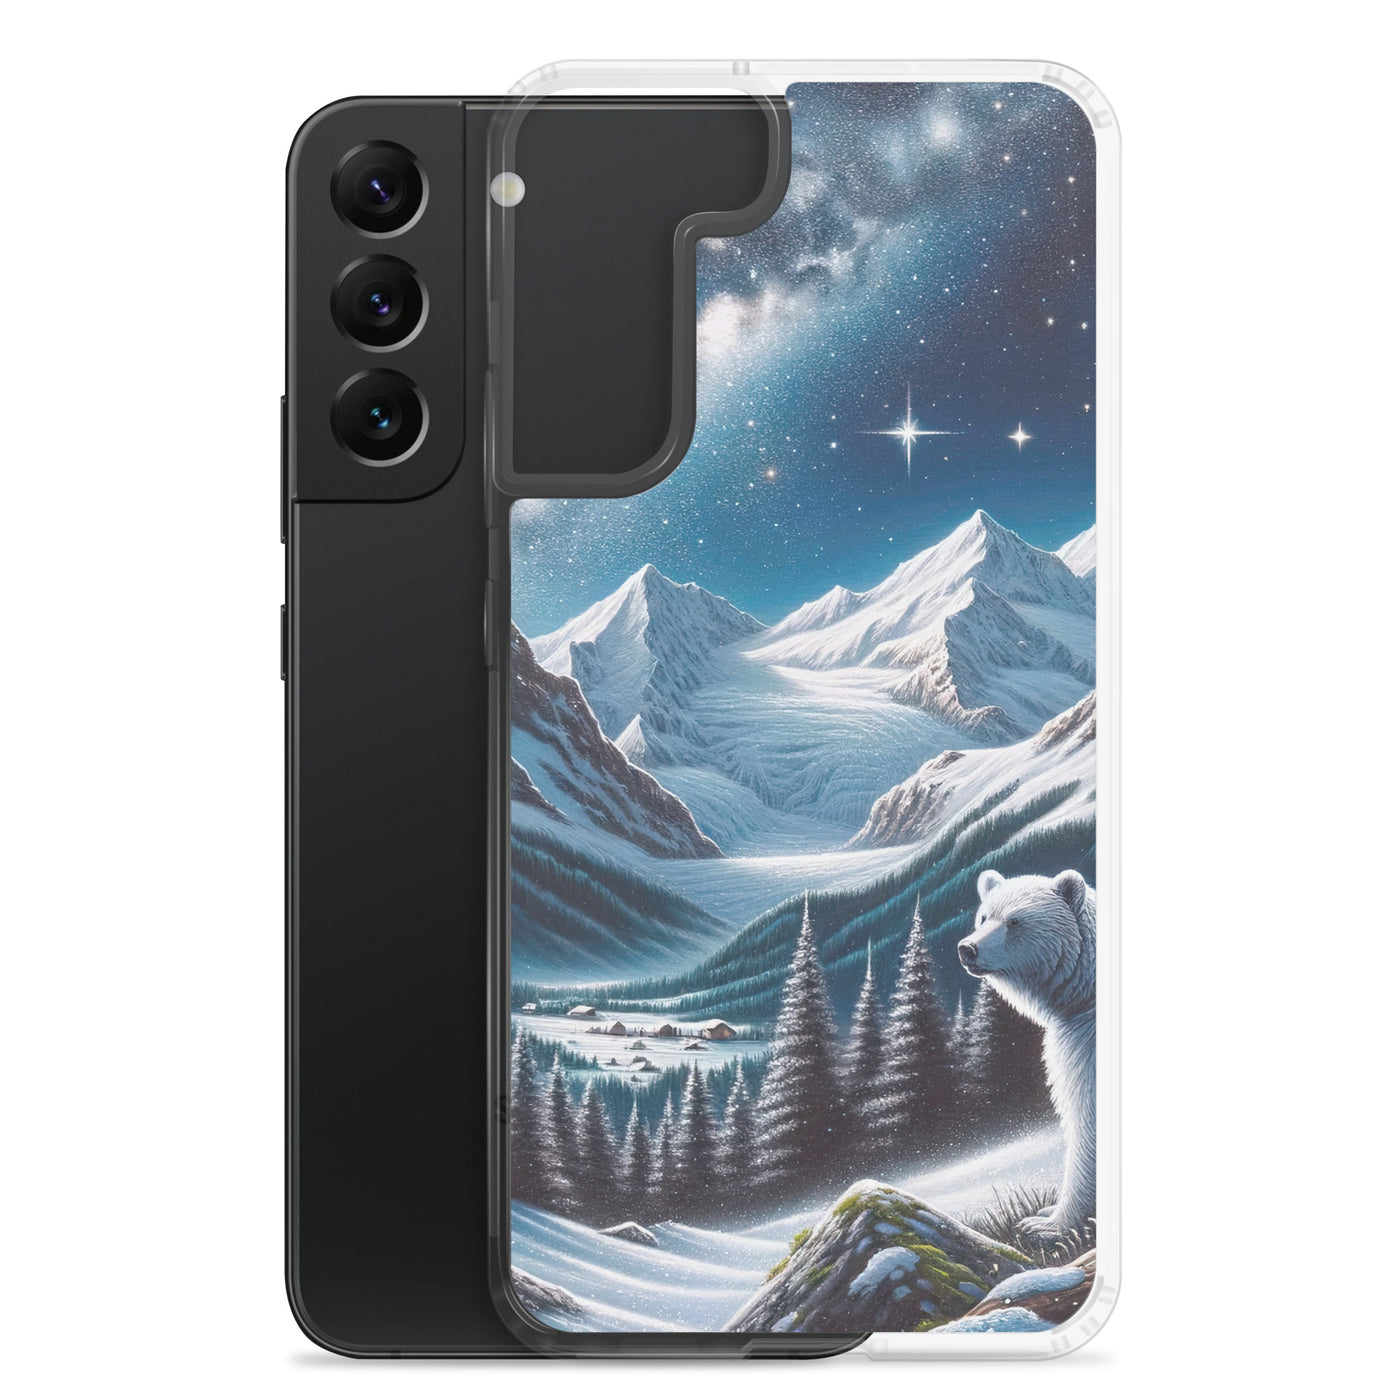 Sternennacht und Eisbär: Acrylgemälde mit Milchstraße, Alpen und schneebedeckte Gipfel - Samsung Schutzhülle (durchsichtig) camping xxx yyy zzz